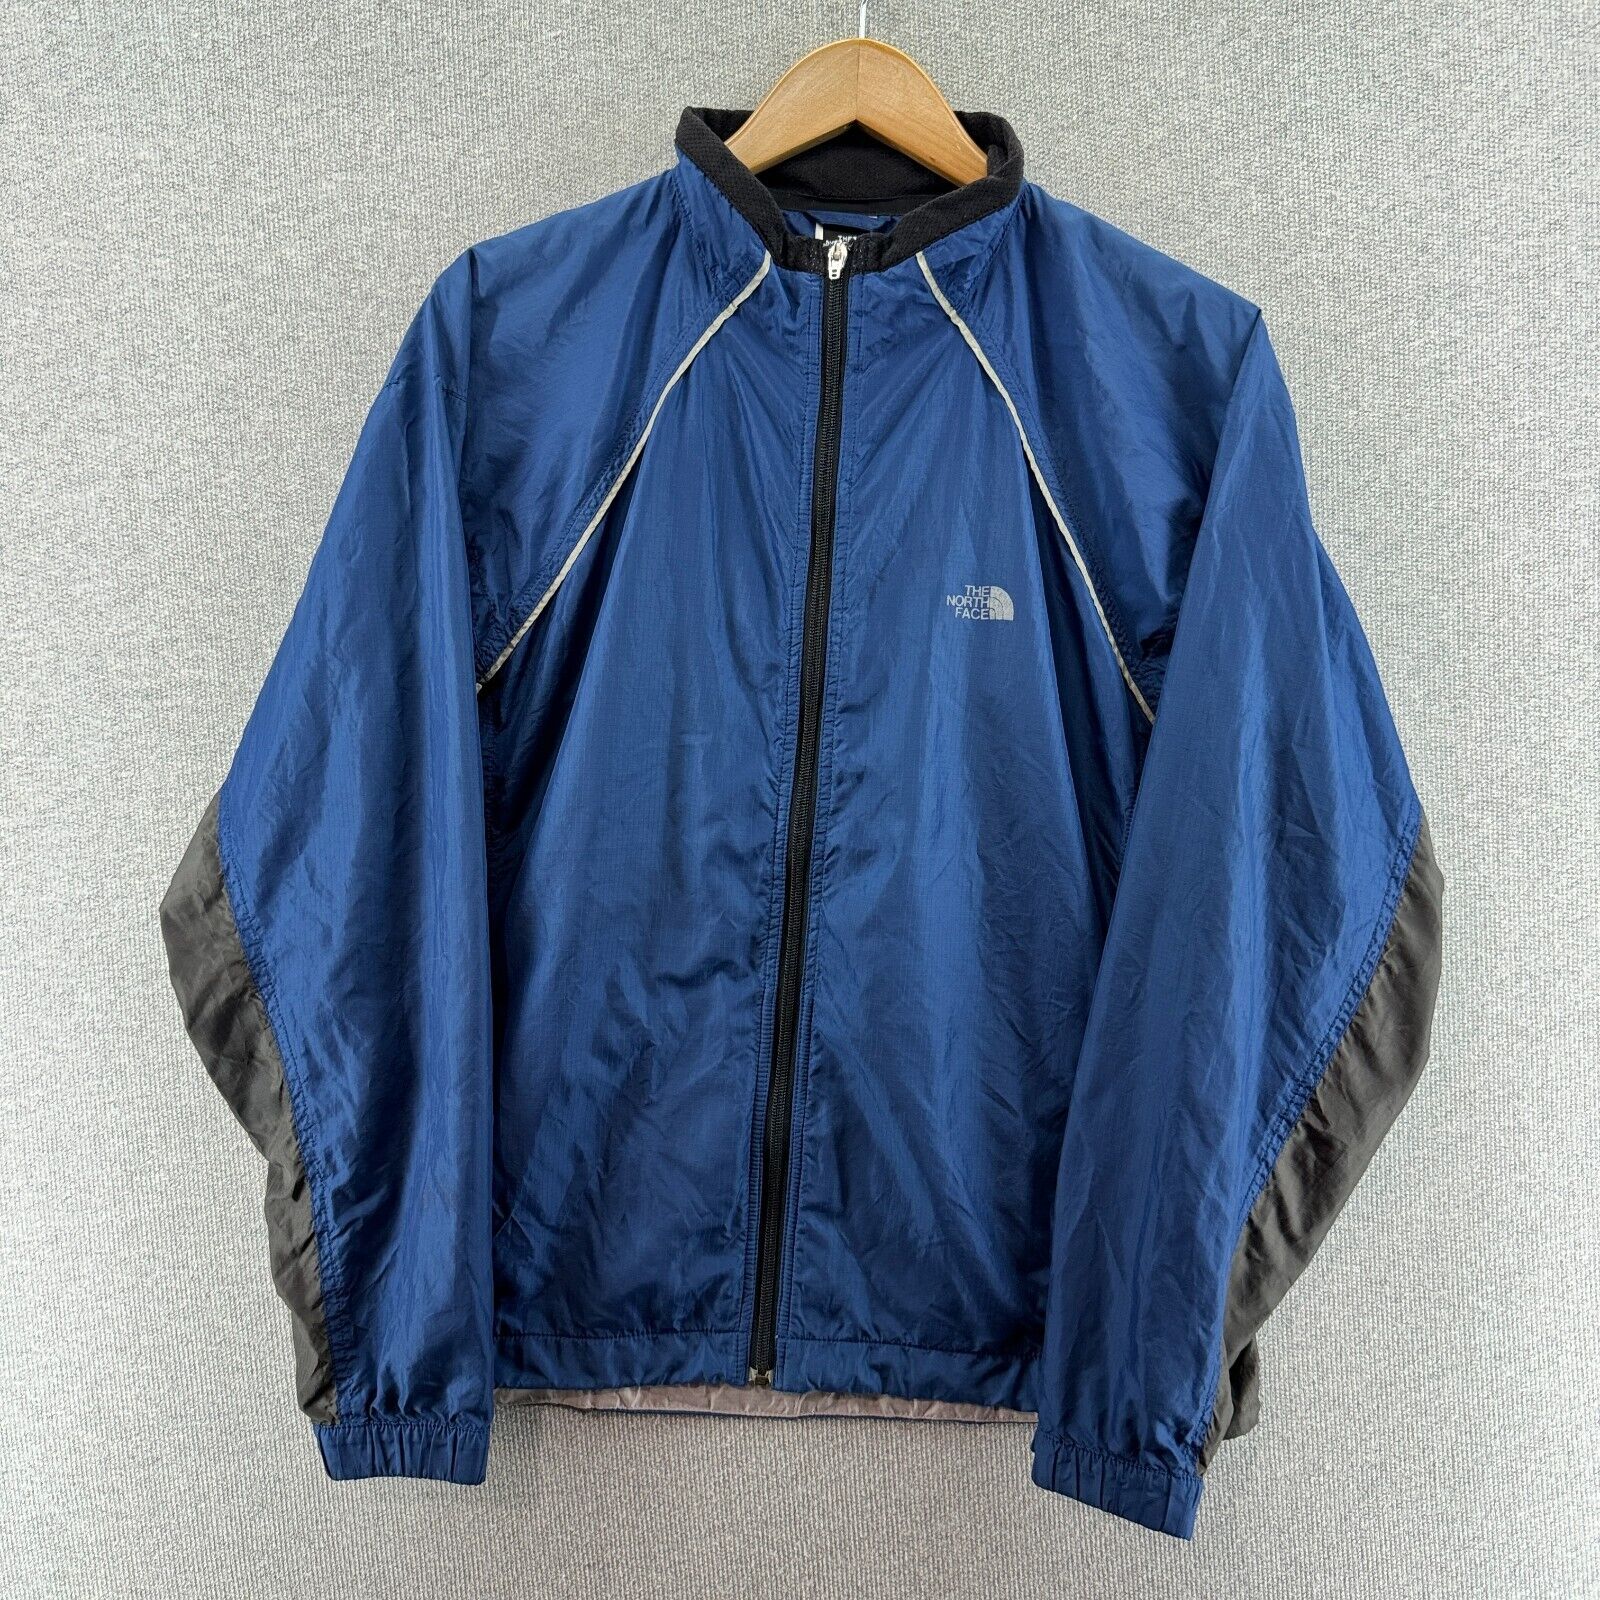 Vintage The North Face Mens Jacket Blue Medium Lightweight Windbreaker Full Zip